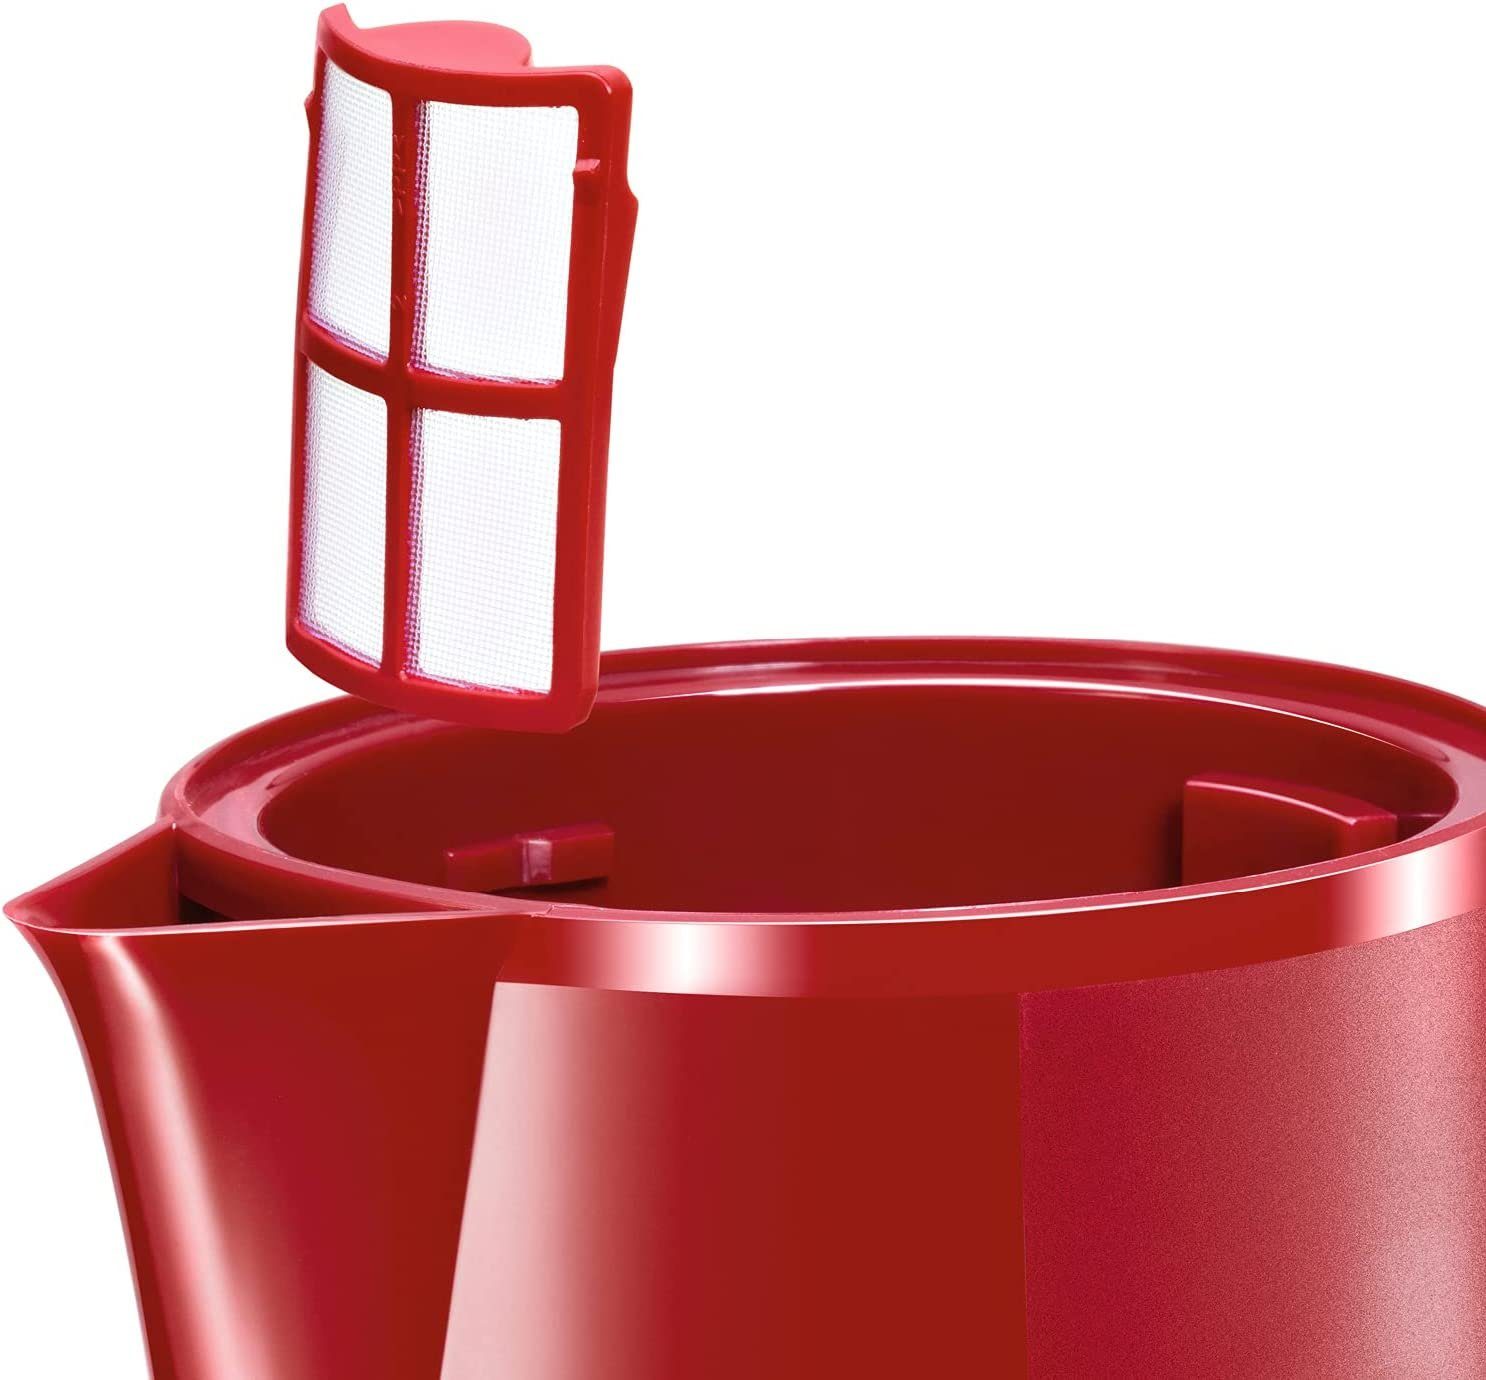 2400 Wasserkocher kabelloser Wasserstandsanzeige W CompactClass, BOSCH Rot Wasserkocher